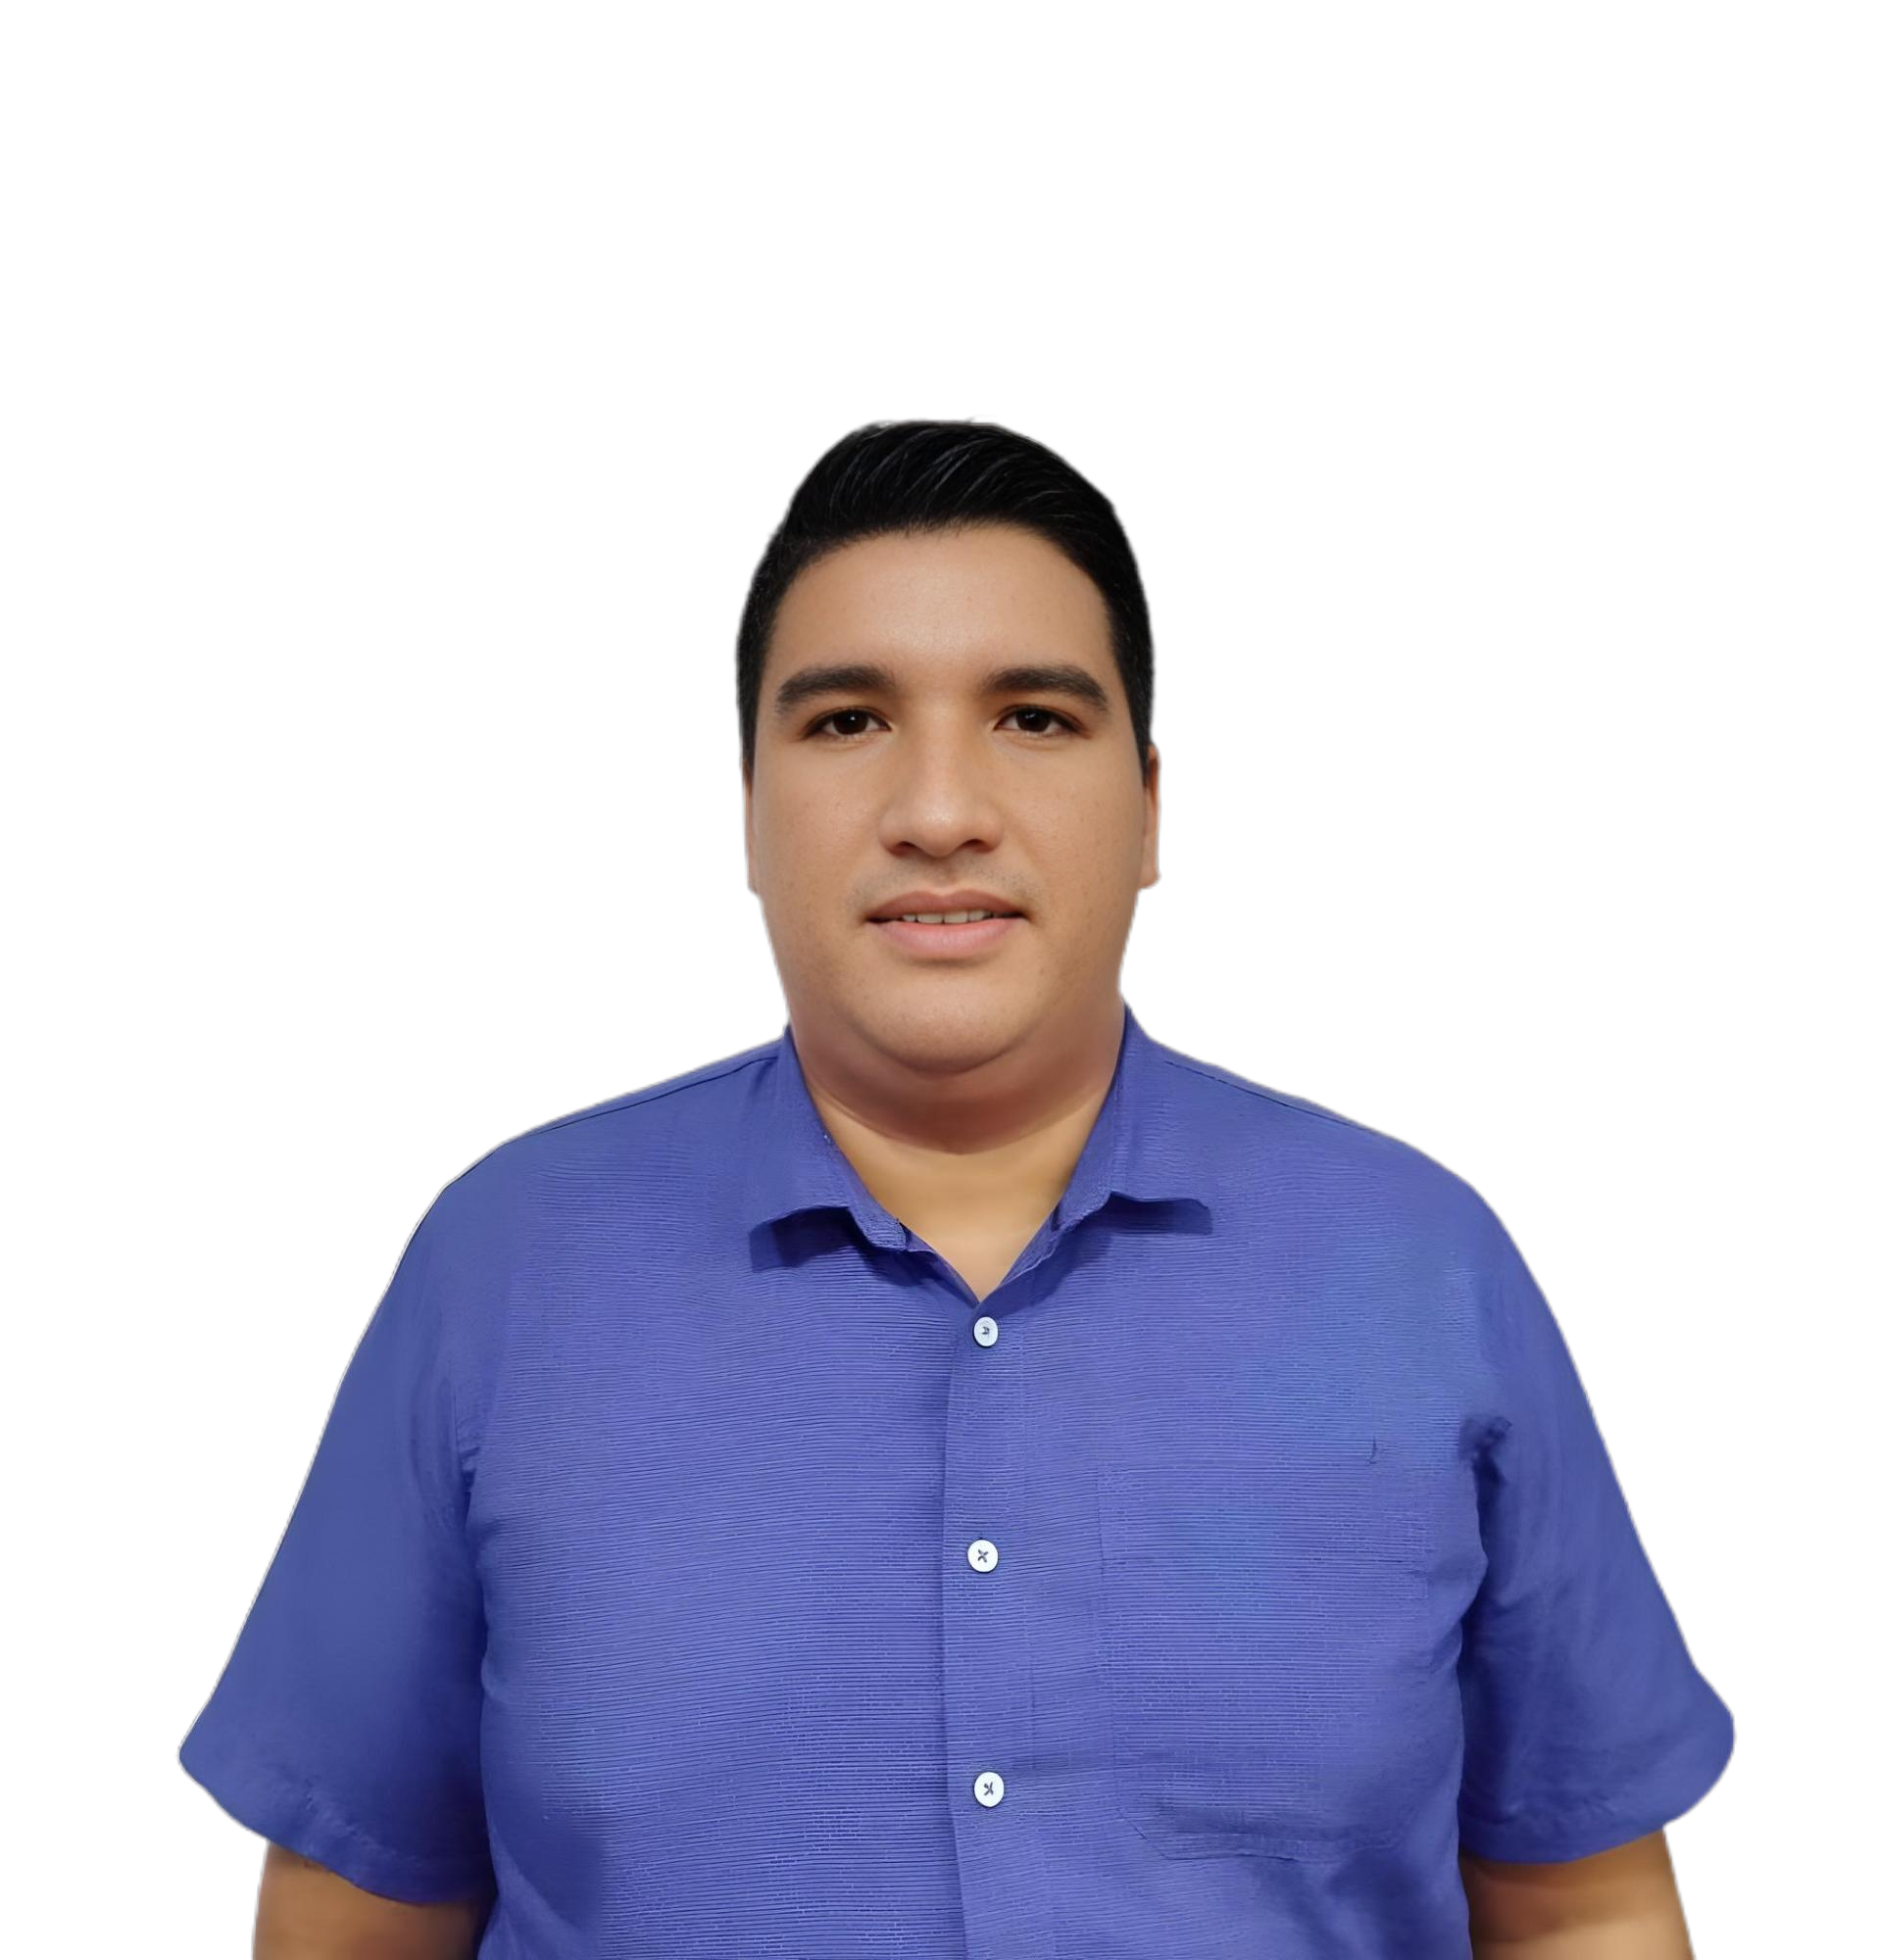 Wilmer Iván Chavez Garrido